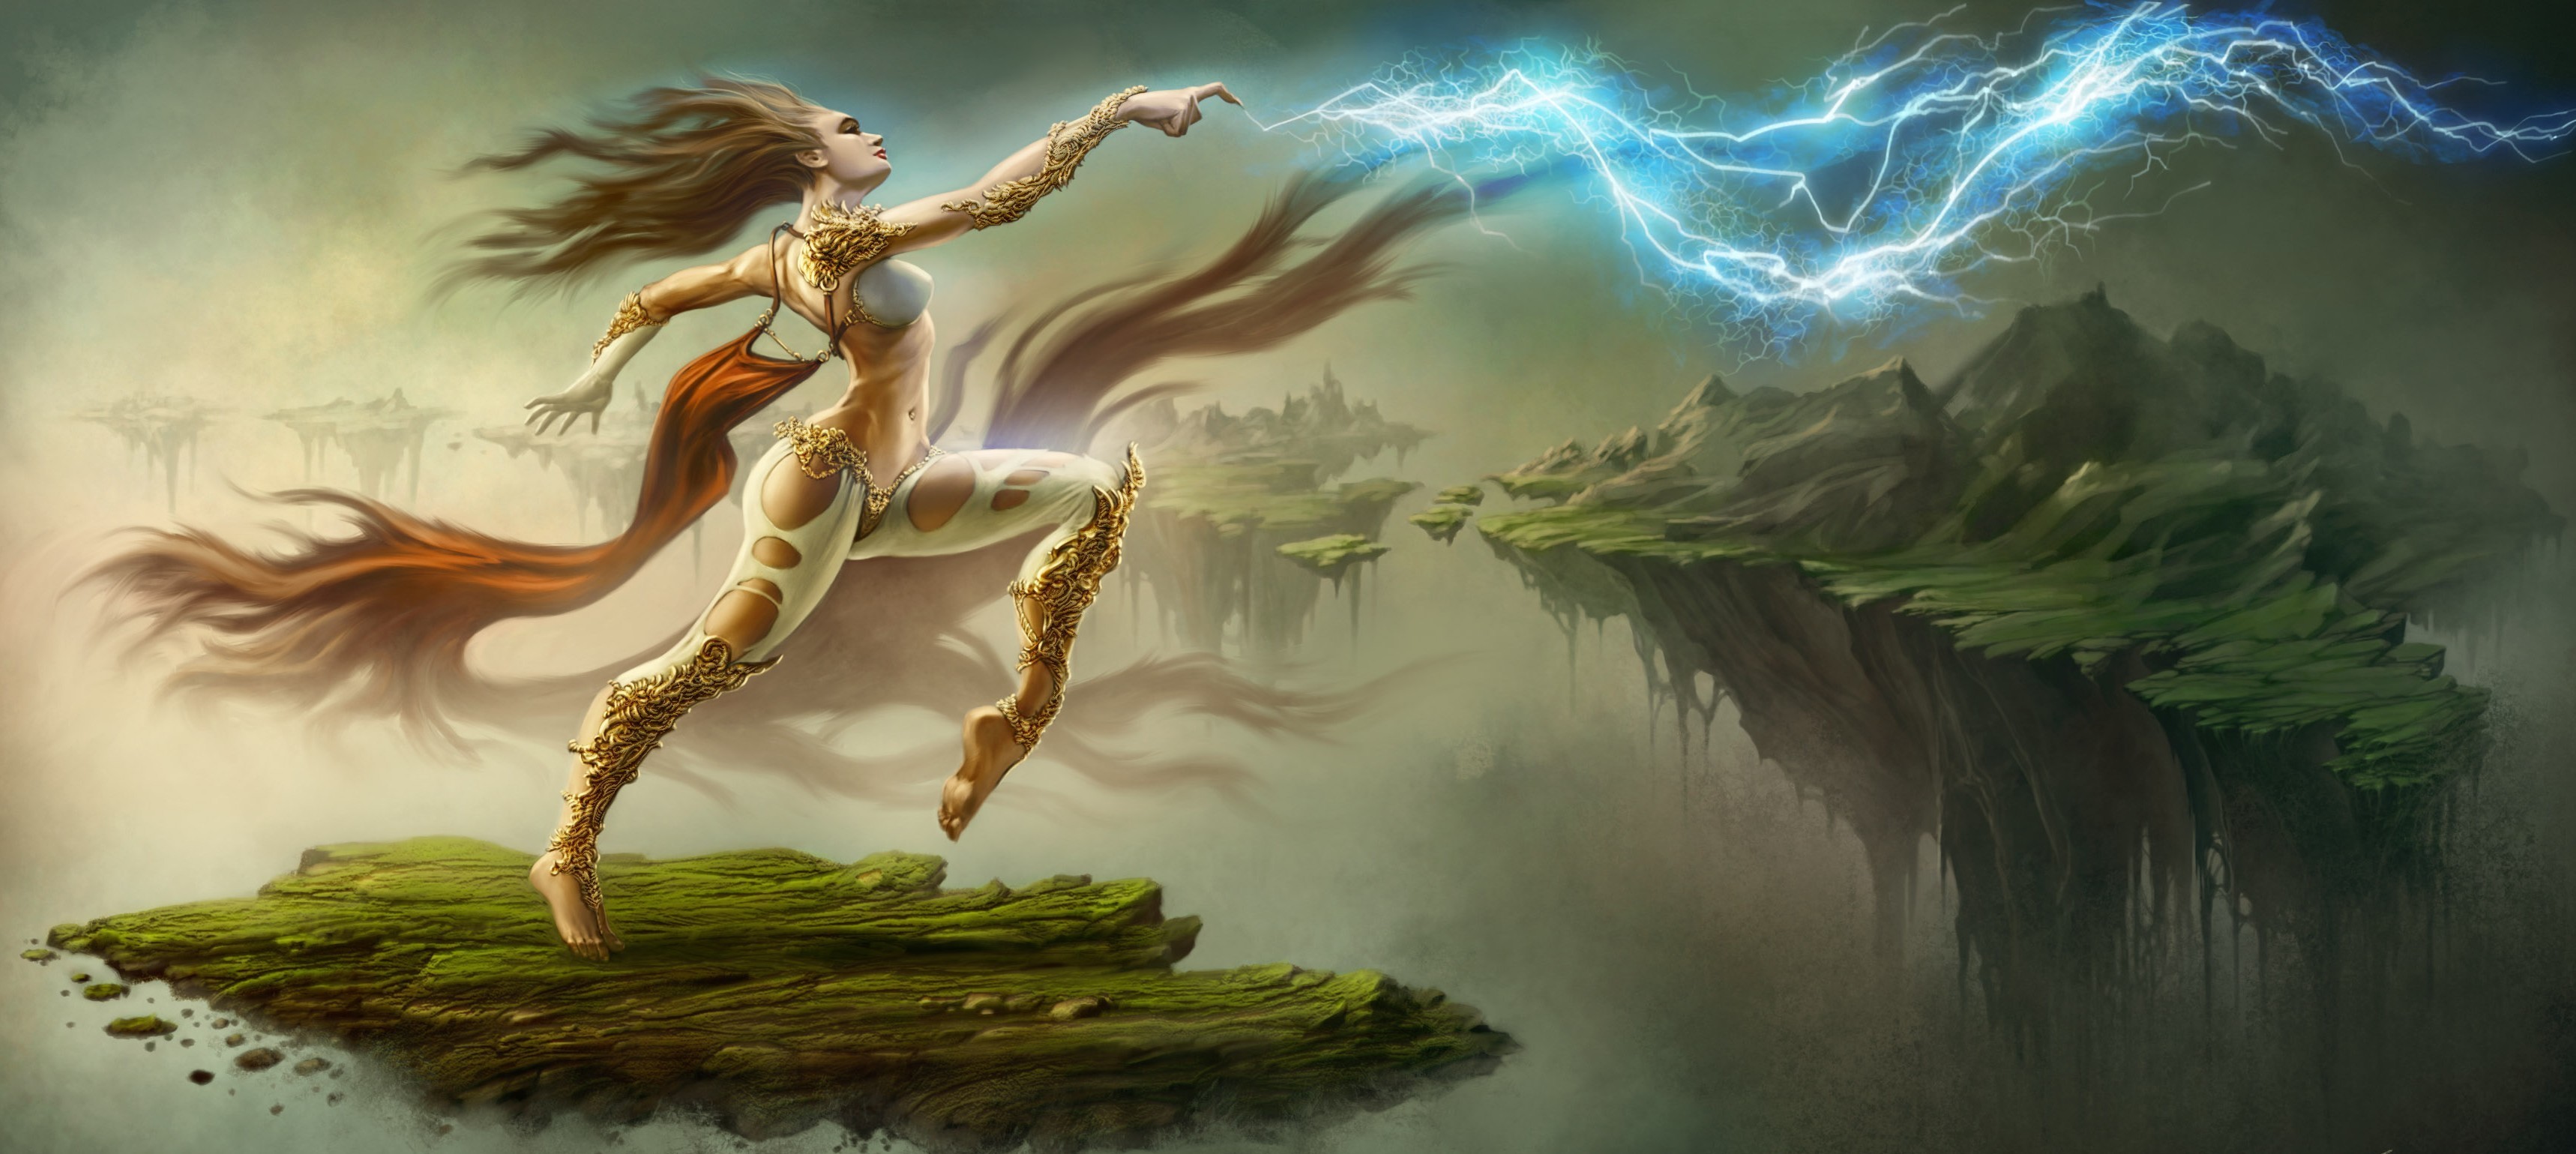 General 3436x1539 fantasy art artwork fantasy girl magic long hair women belly brunette lightning